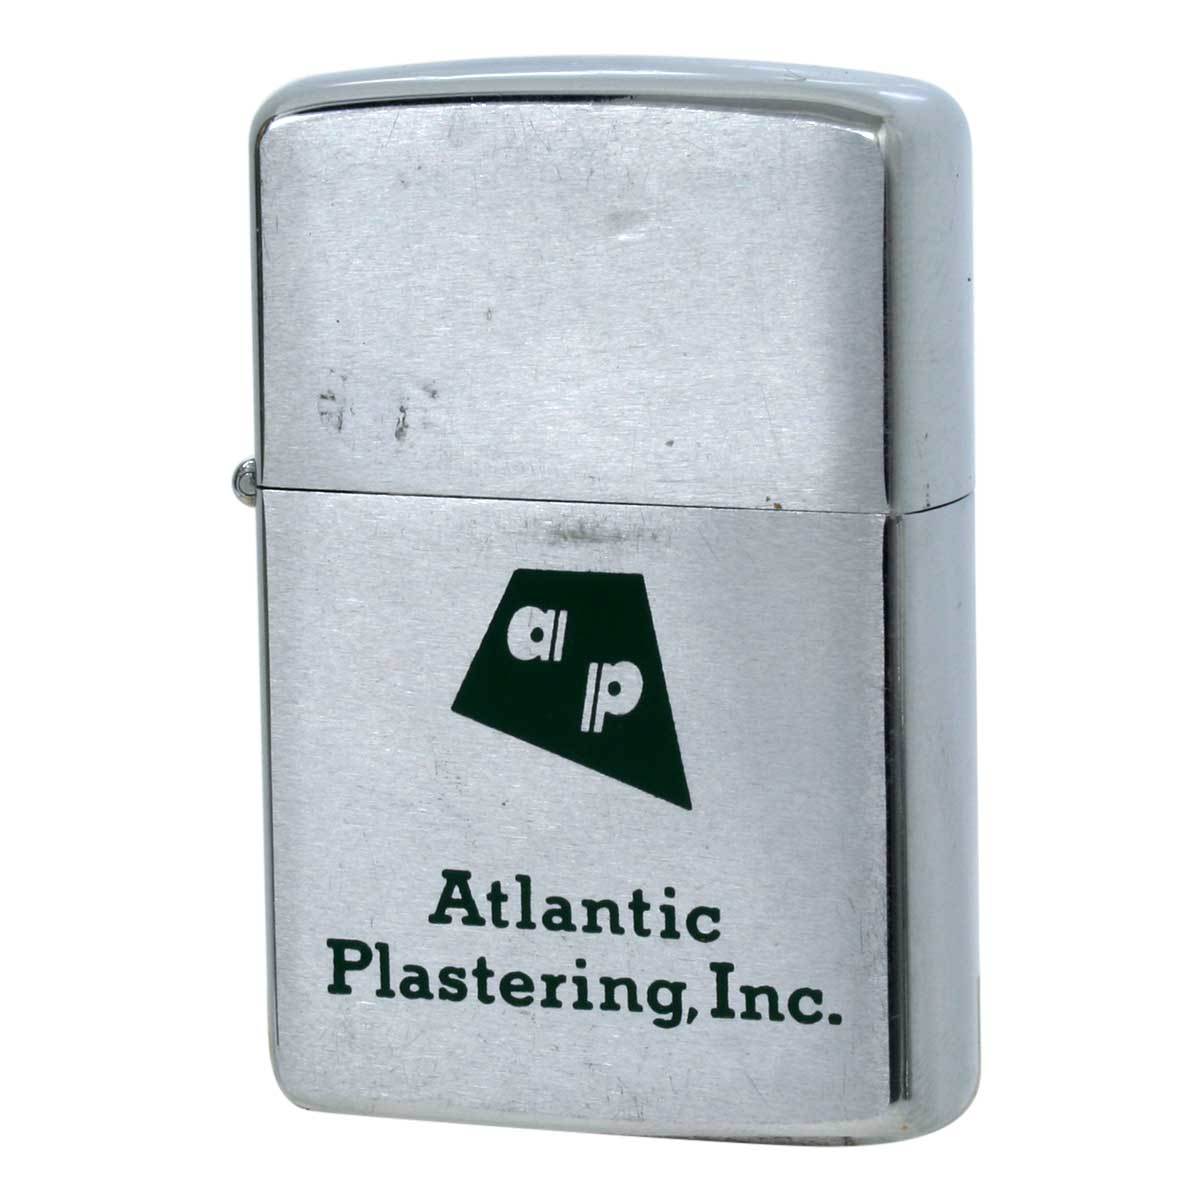 絶版/ヴィンテージ Zippo ジッポー 中古 1967年製造Atlantic Plastering,Inc. [C]使用感あり傷汚れあり